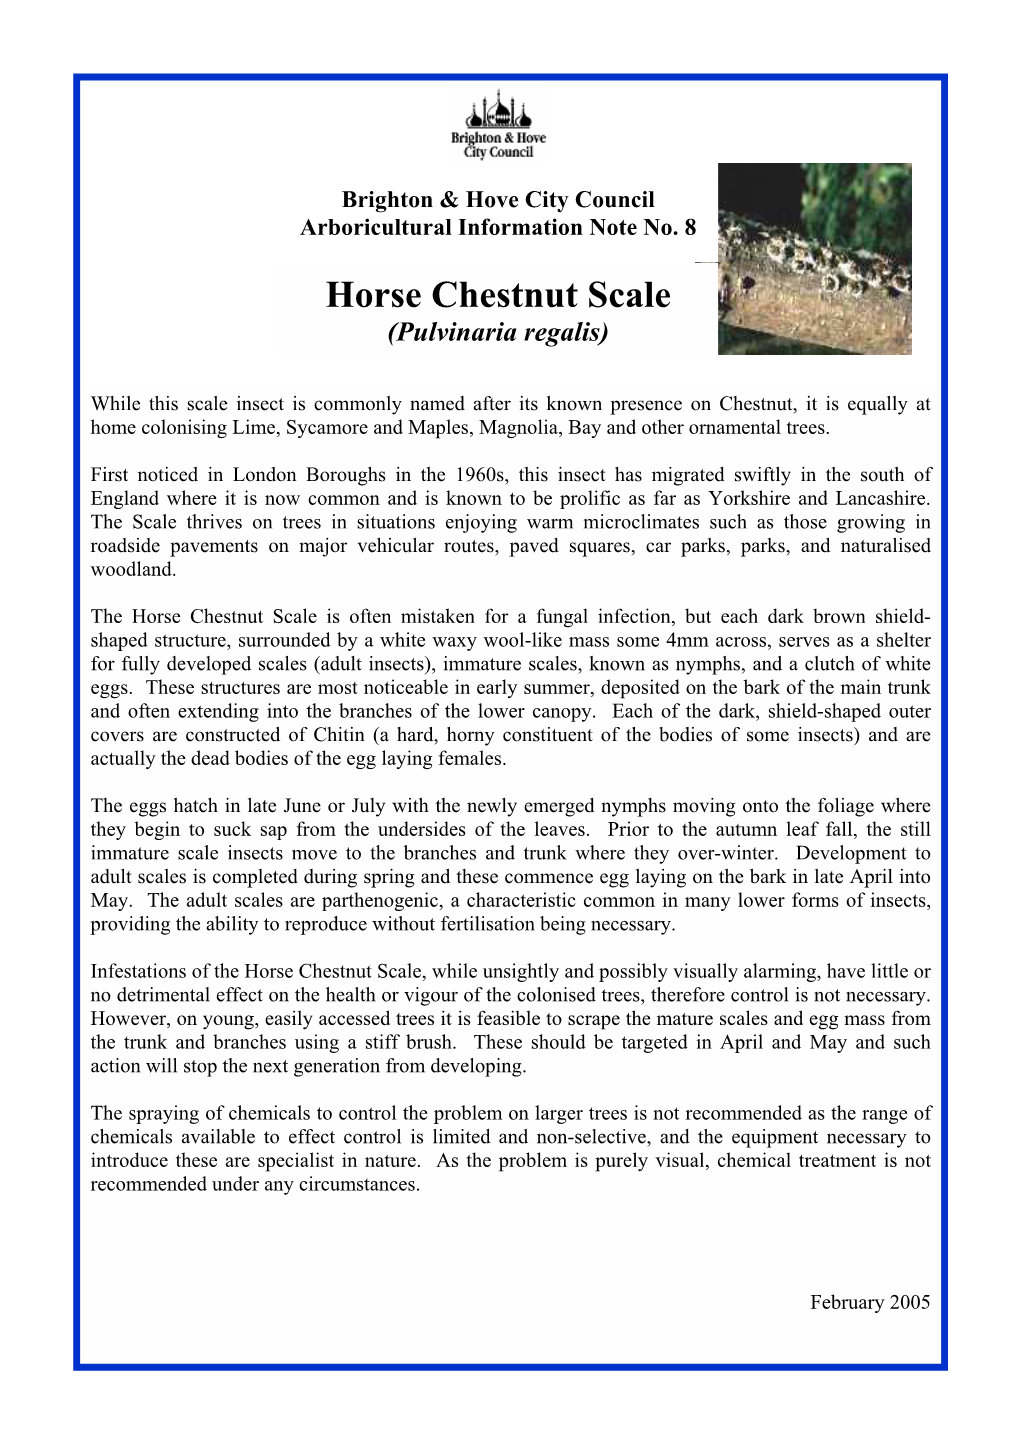 Horse Chestnut Scale (Pulvinaria Regalis)